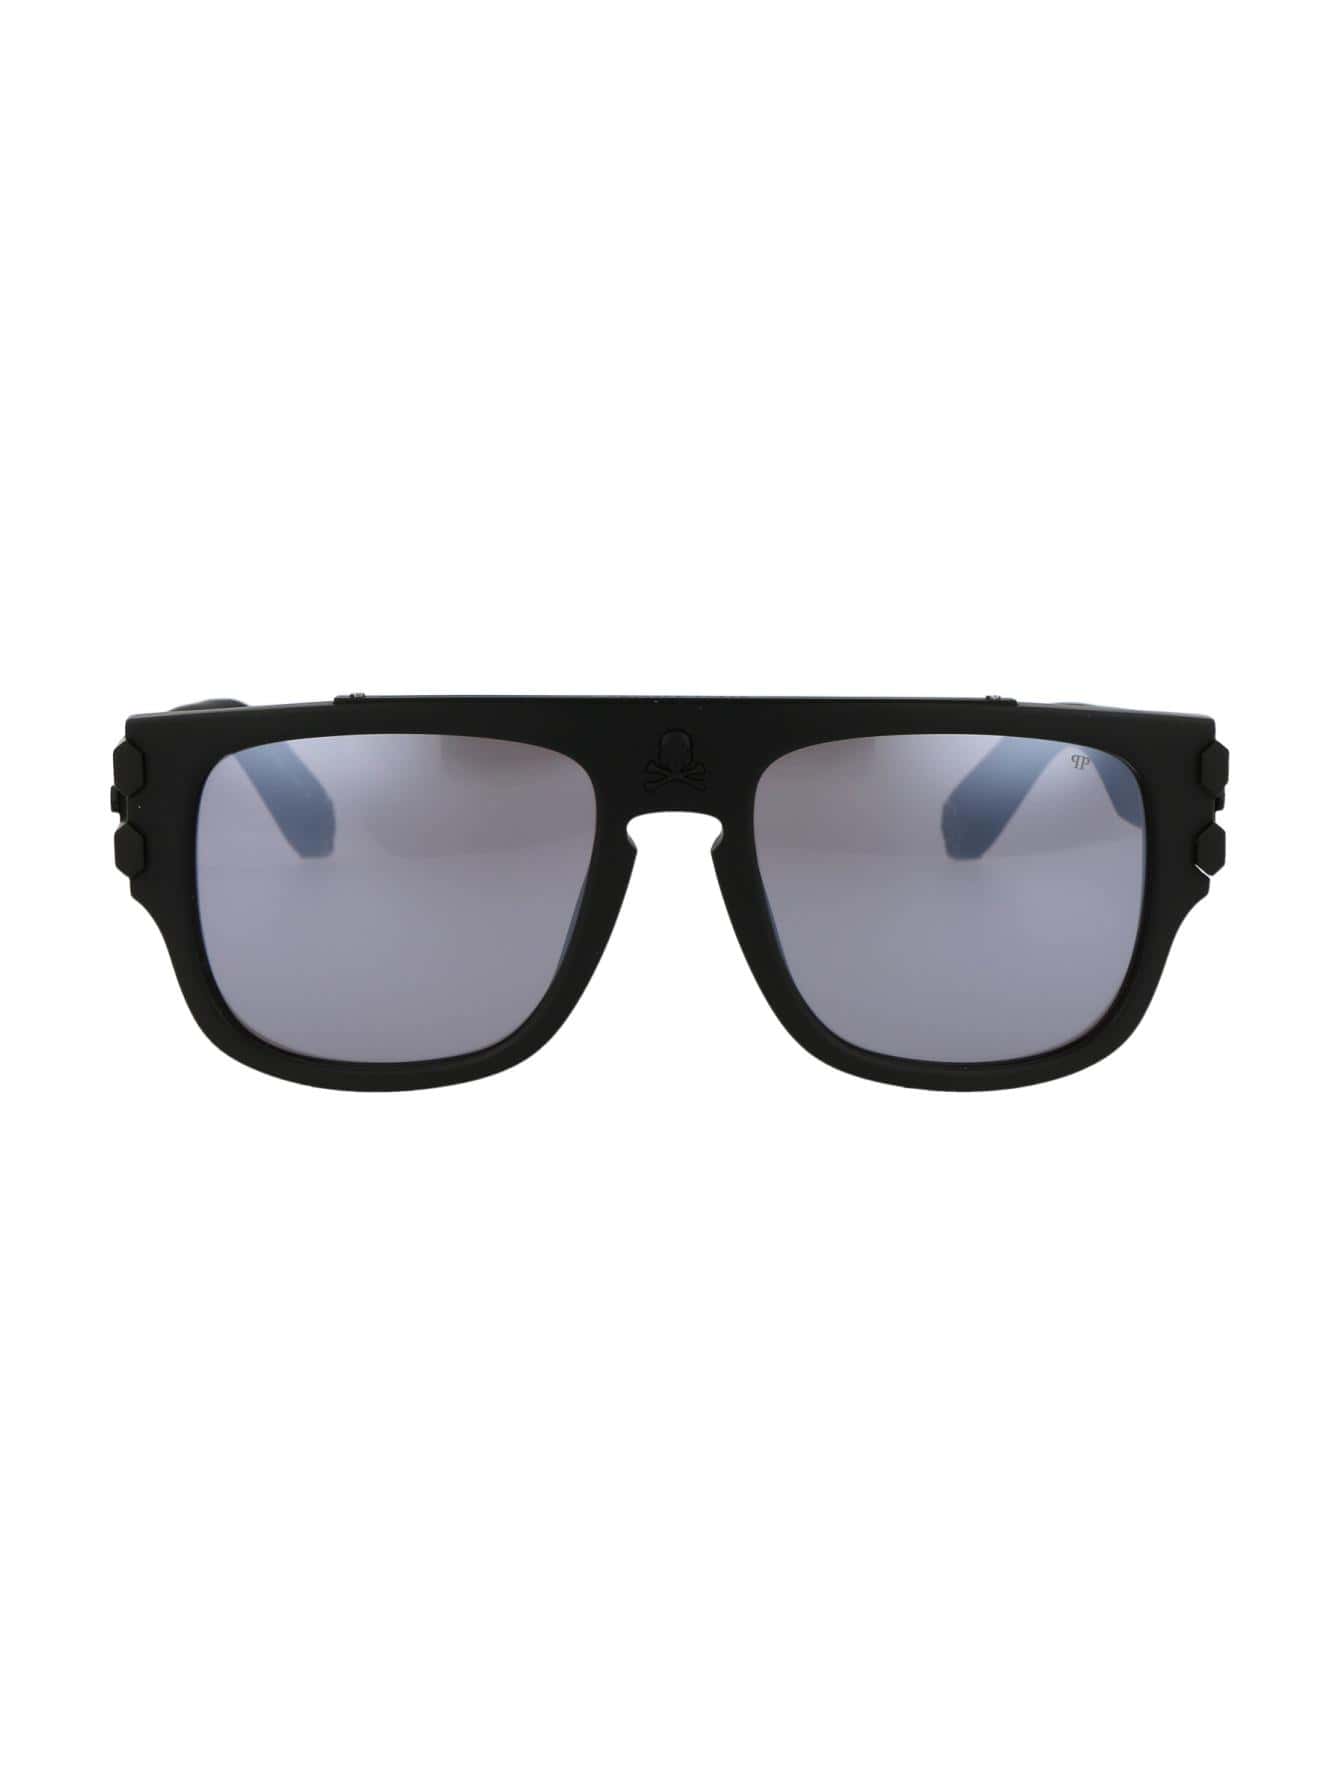 Мужские солнцезащитные очки Philipp Plein DECOR SPP011W703M, многоцветный солнцезащитные очки philipp plein 006m 890x